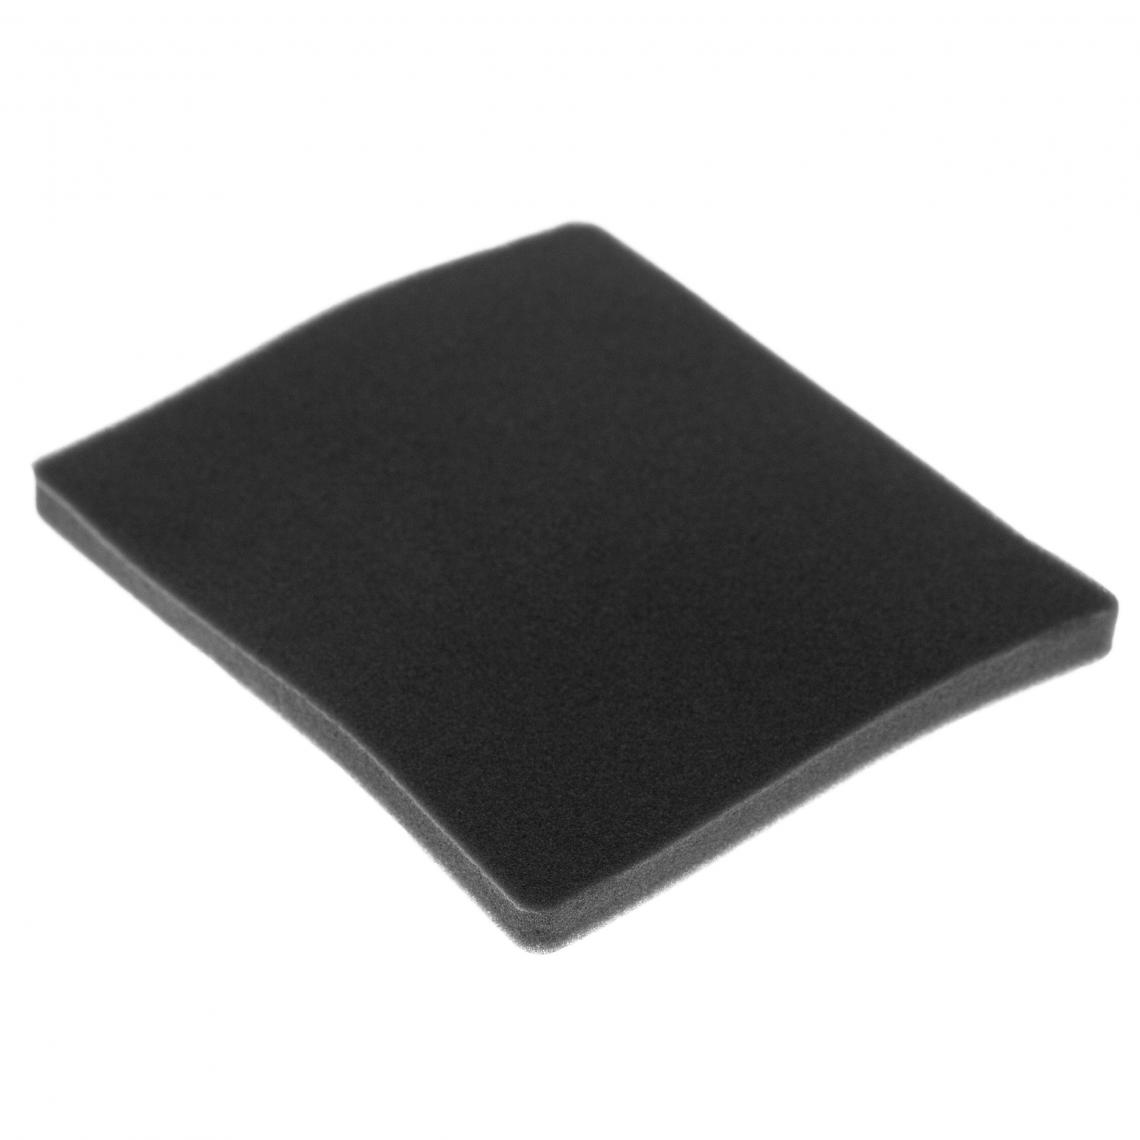 Vhbw - vhbw Filtre compatible avec Electrolux ZAM6104 (910286663) aspirateur - filtre de sortie d'air (filtre éponge), noir - Accessoire entretien des sols